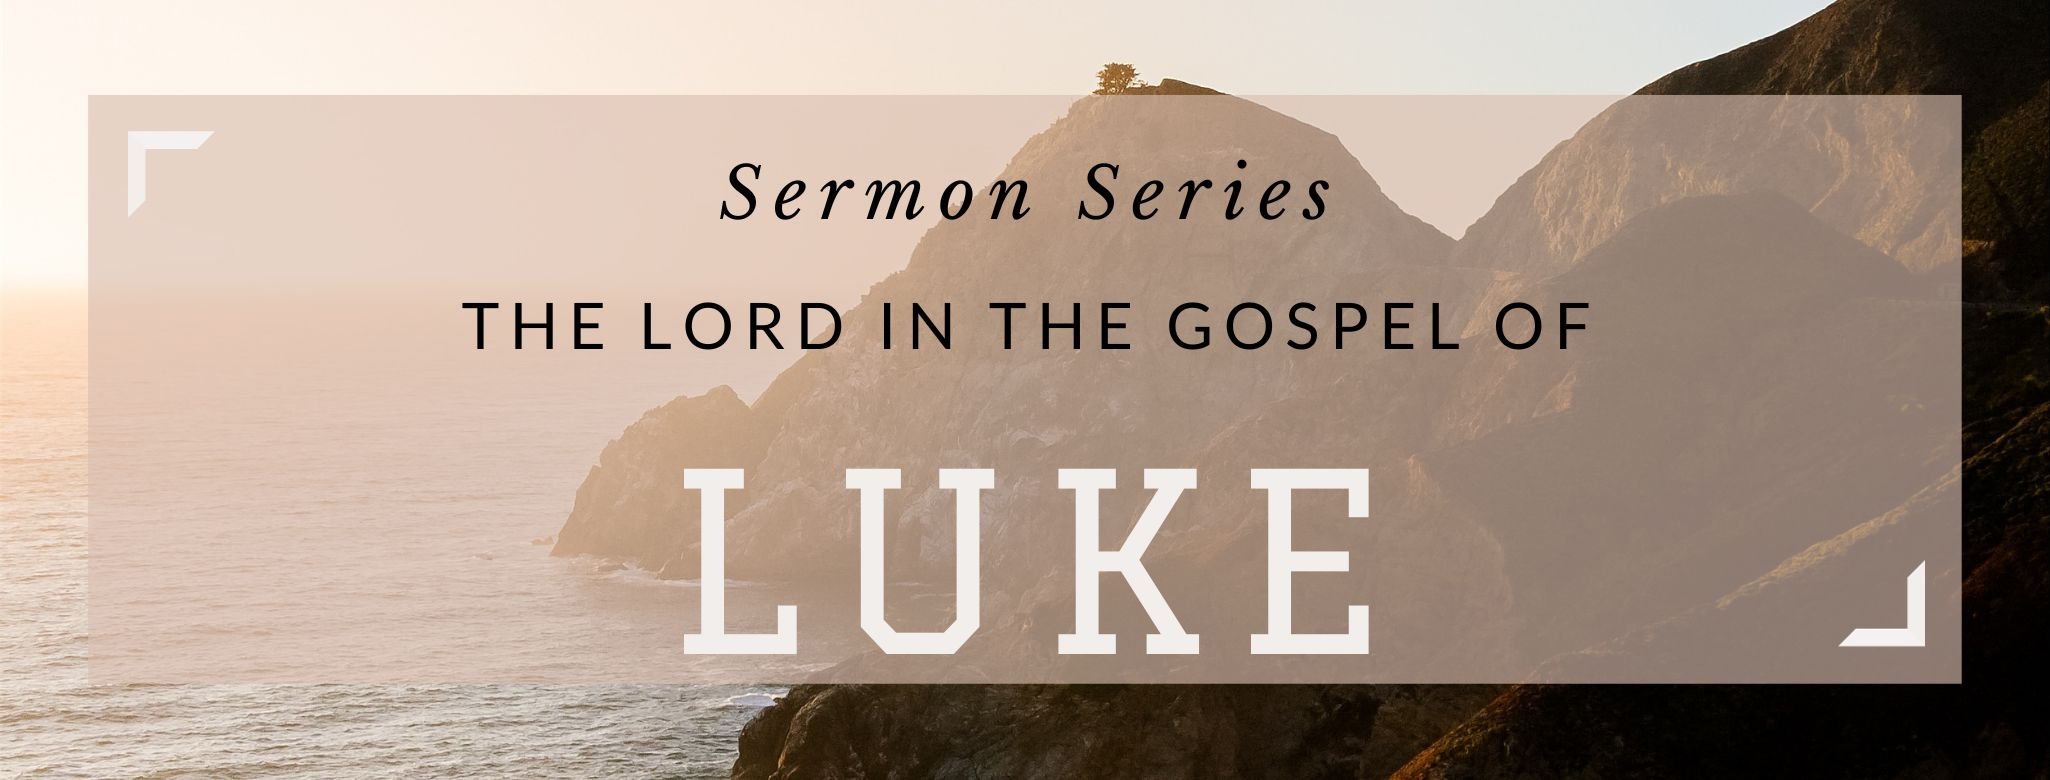 Sermon Series LUKE.jpg